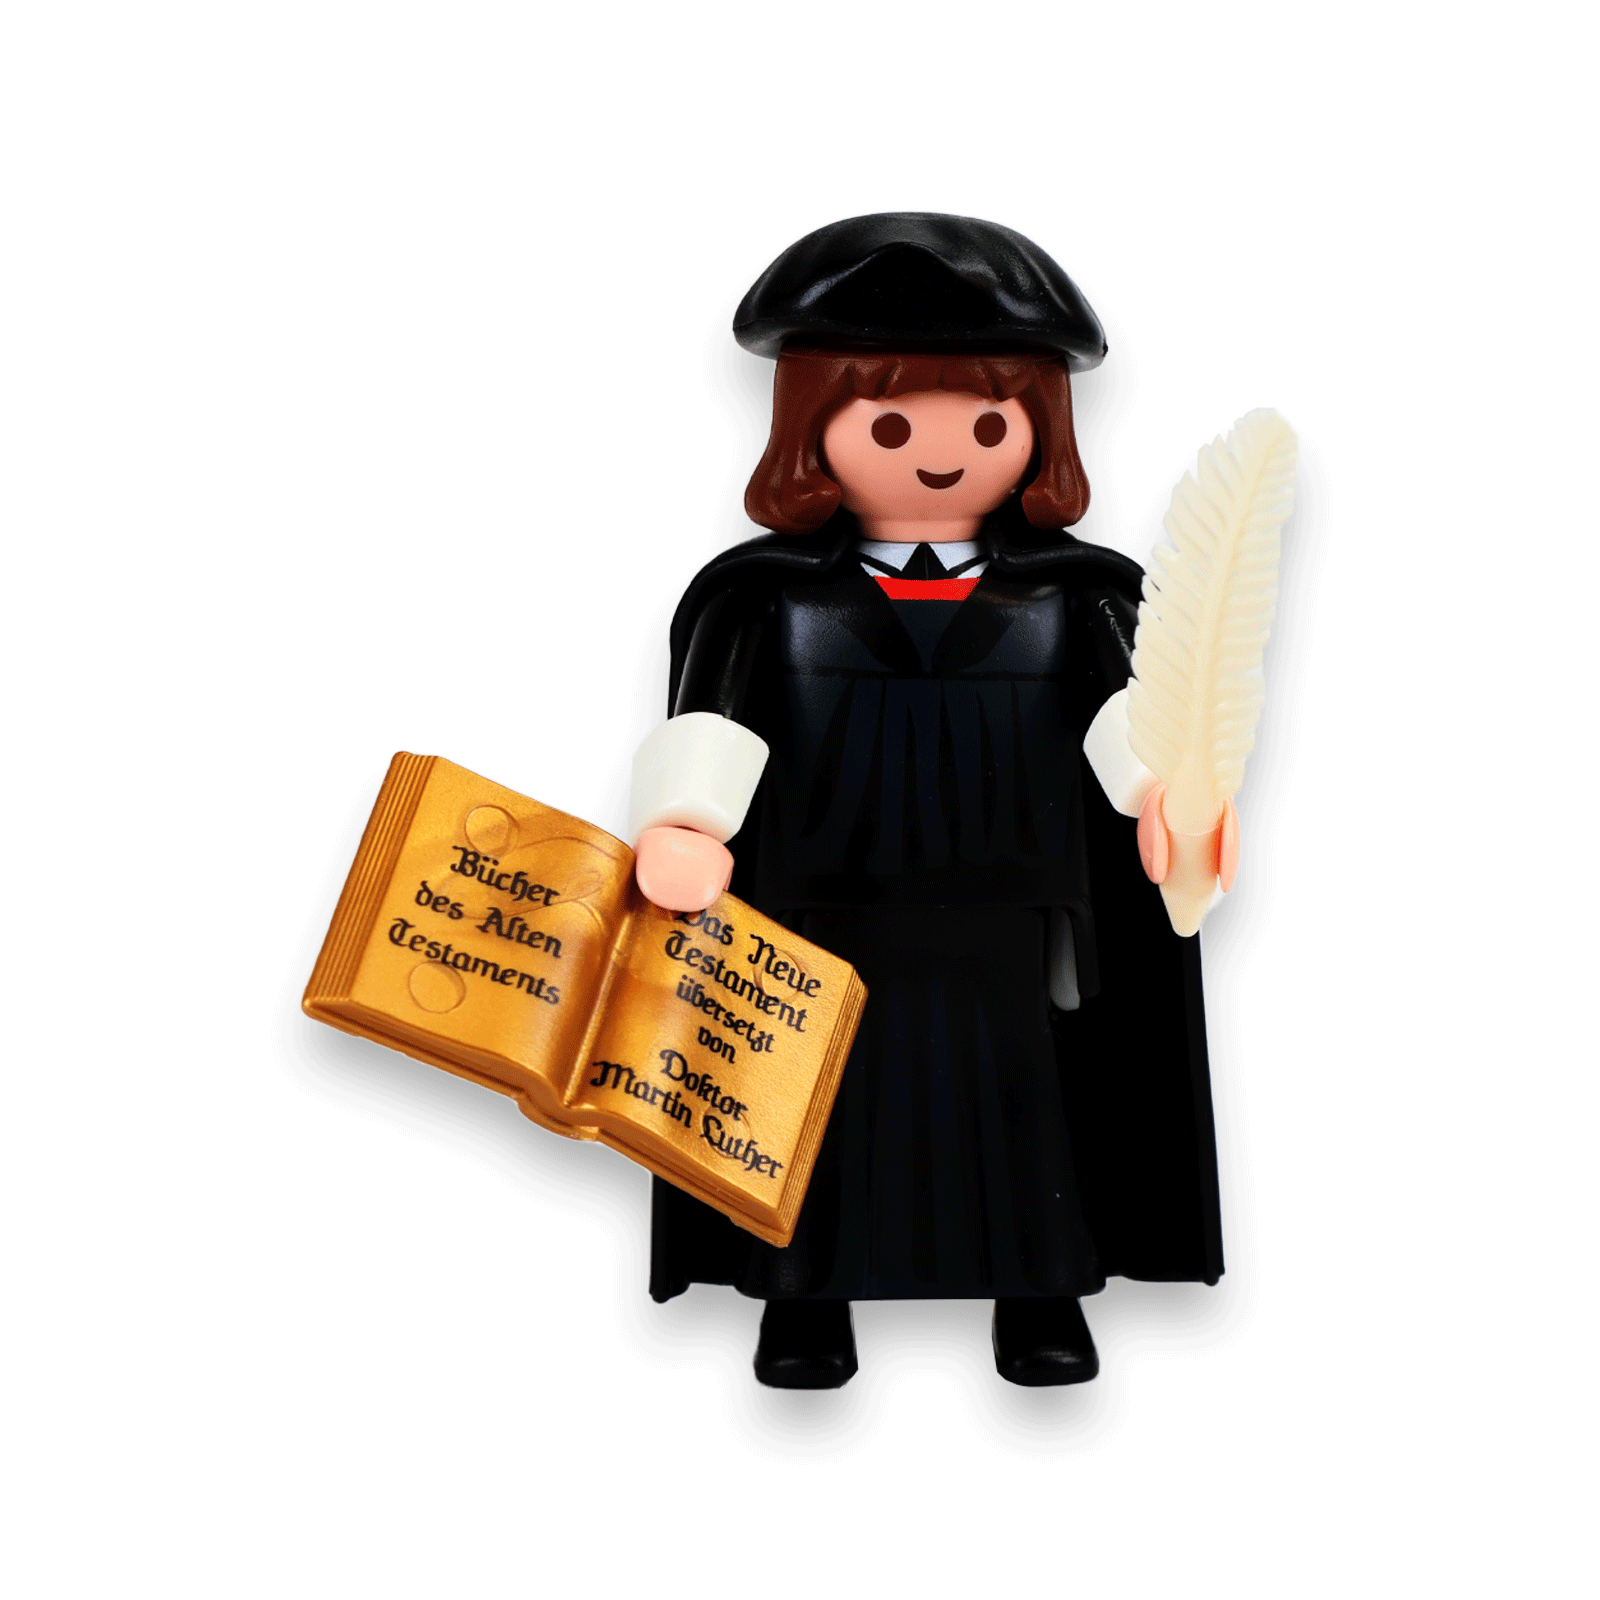 Der kleine Luther von Playmobil mit der Schreibfeder und Bibel.